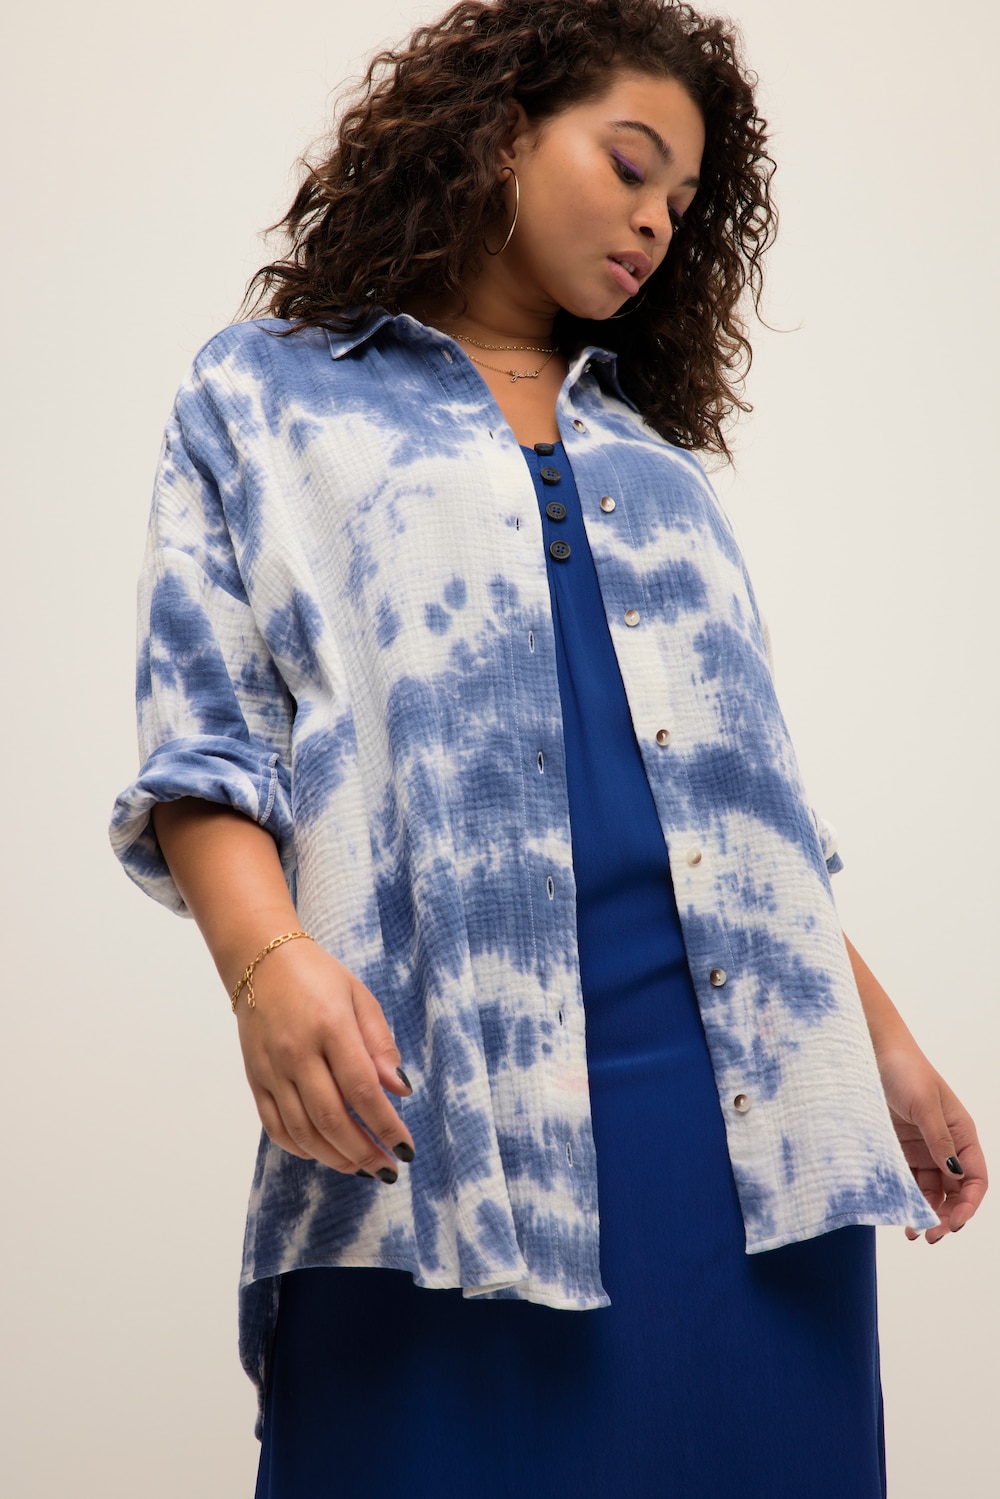 Grote Maten Mousseline blouse, Dames, blauw, Maat: 58/60, Katoen, Studio Untold